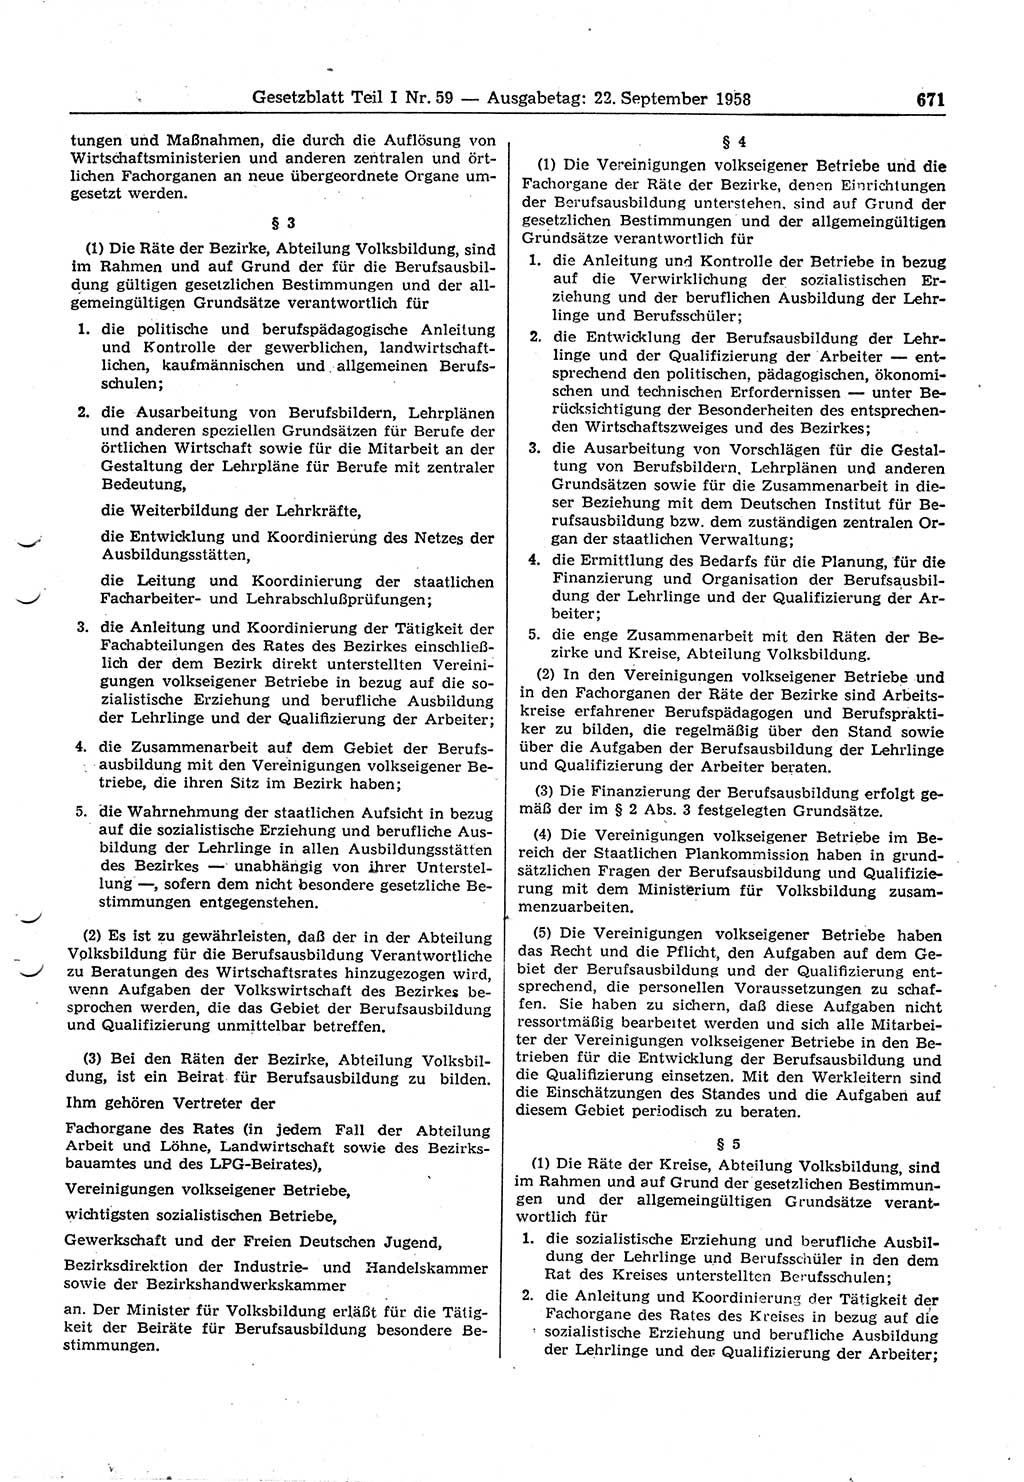 Gesetzblatt (GBl.) der Deutschen Demokratischen Republik (DDR) Teil Ⅰ 1958, Seite 671 (GBl. DDR Ⅰ 1958, S. 671)